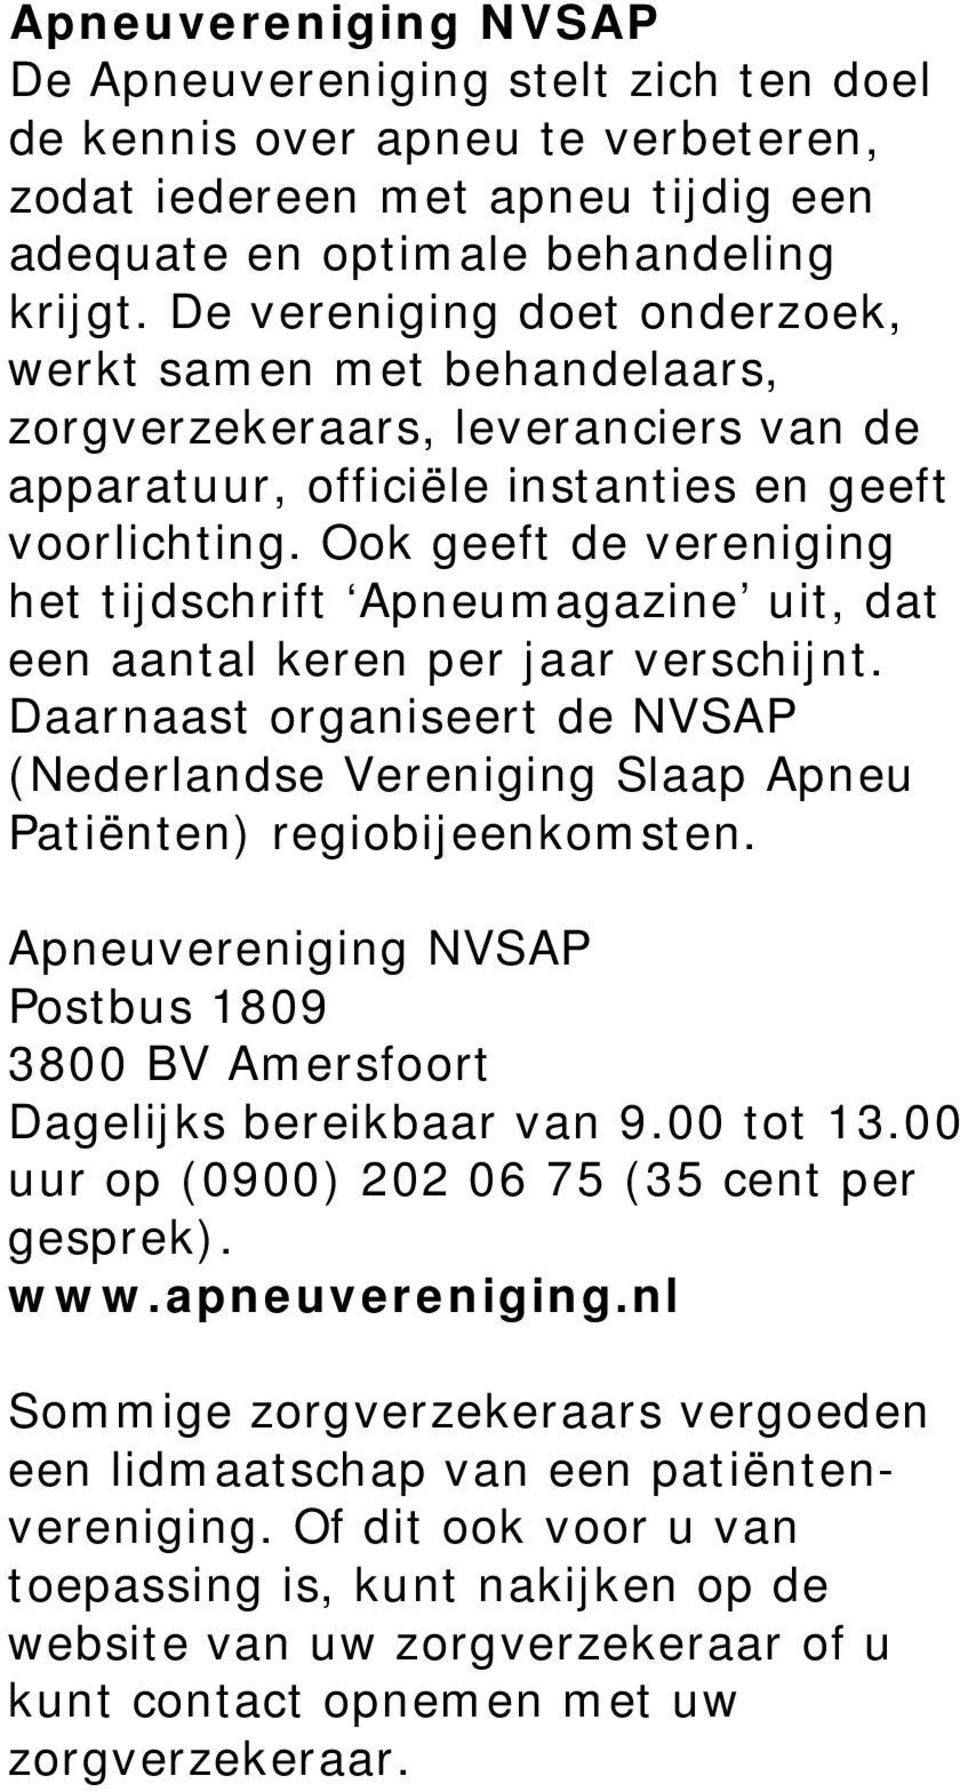 Ook geeft de vereniging het tijdschrift Apneumagazine uit, dat een aantal keren per jaar verschijnt. Daarnaast organiseert de NVSAP (Nederlandse Vereniging Slaap Apneu Patiënten) regiobijeenkomsten.